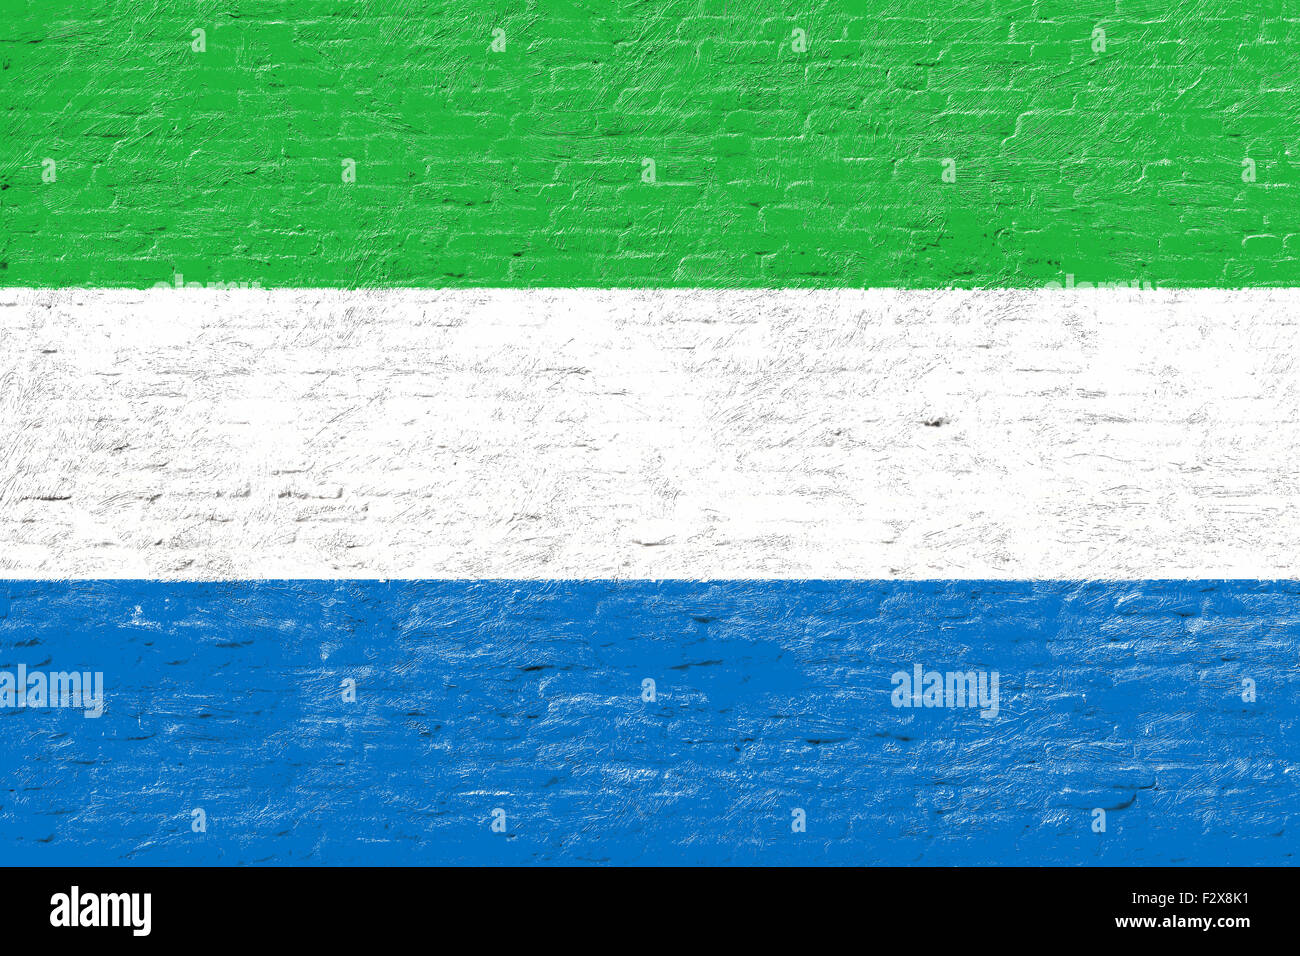 Sierra Leone - drapeau national sur mur de brique Banque D'Images